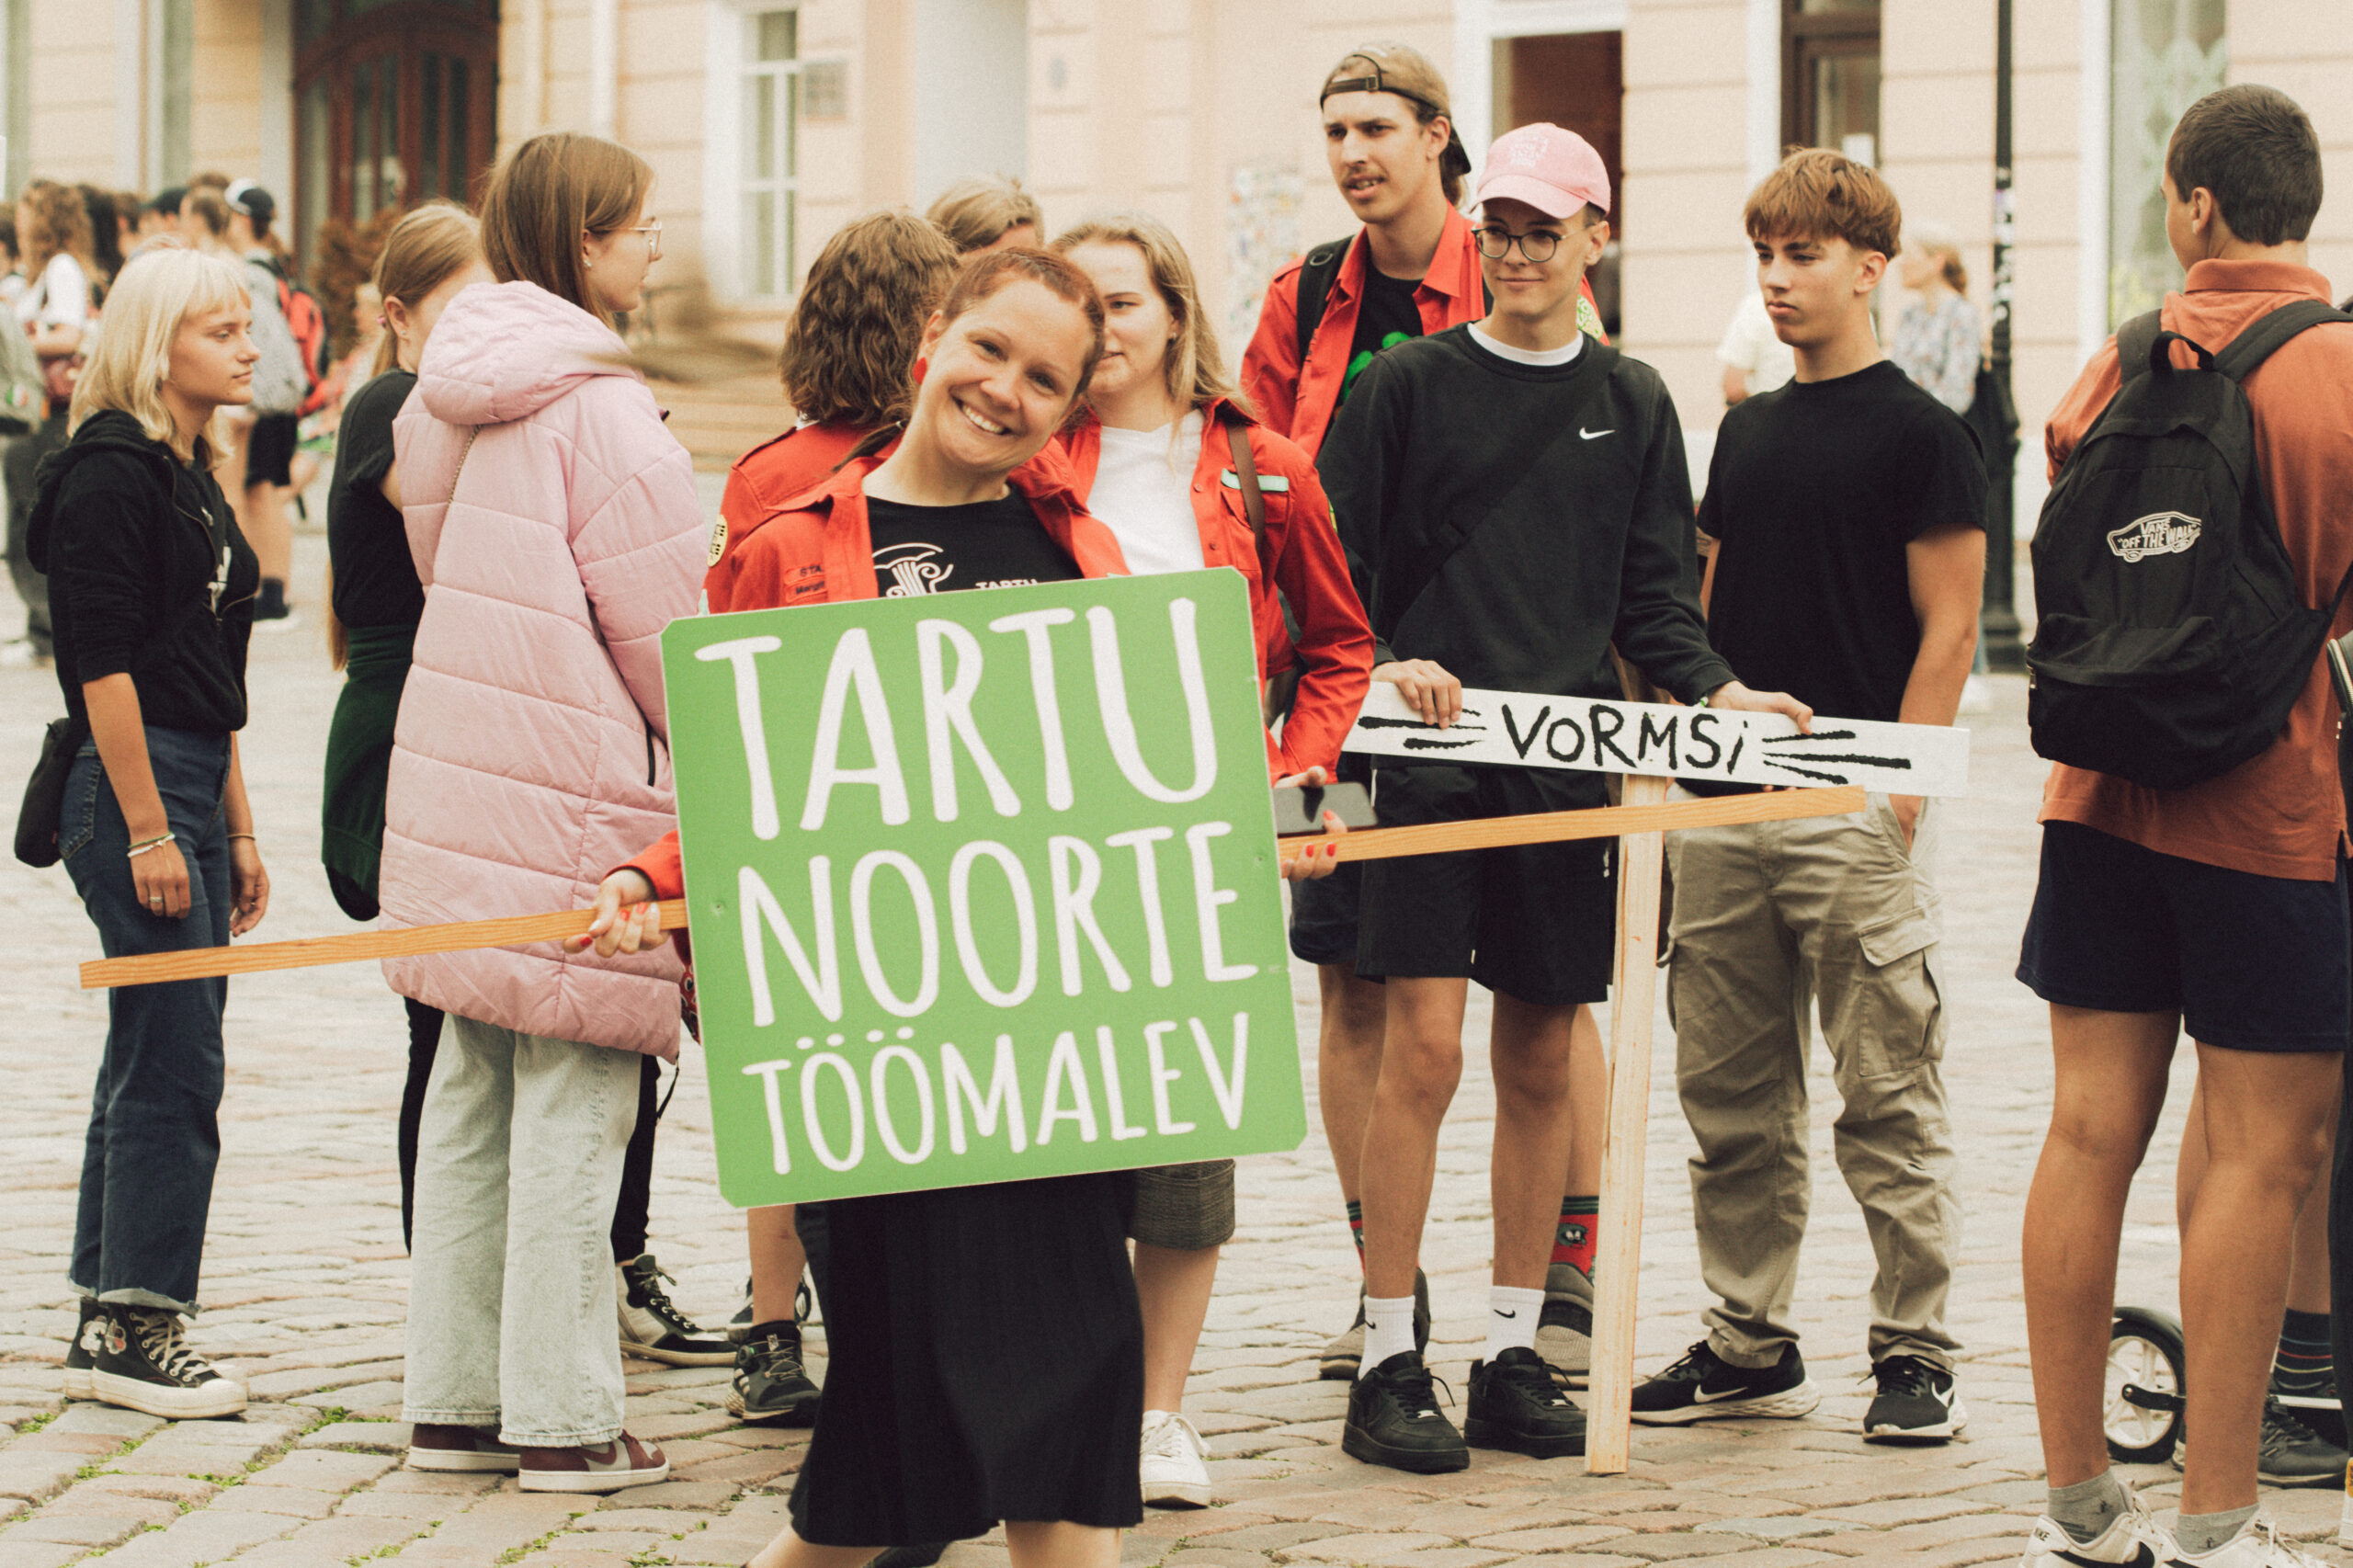 Juunikuu keskpaik tähendab Tartu Noorte Töömalevas alati seda, et ees on ootamas paar kuud tegusat malevasuve. 17. juunil toimus meeleolukas avamisüritus koos l